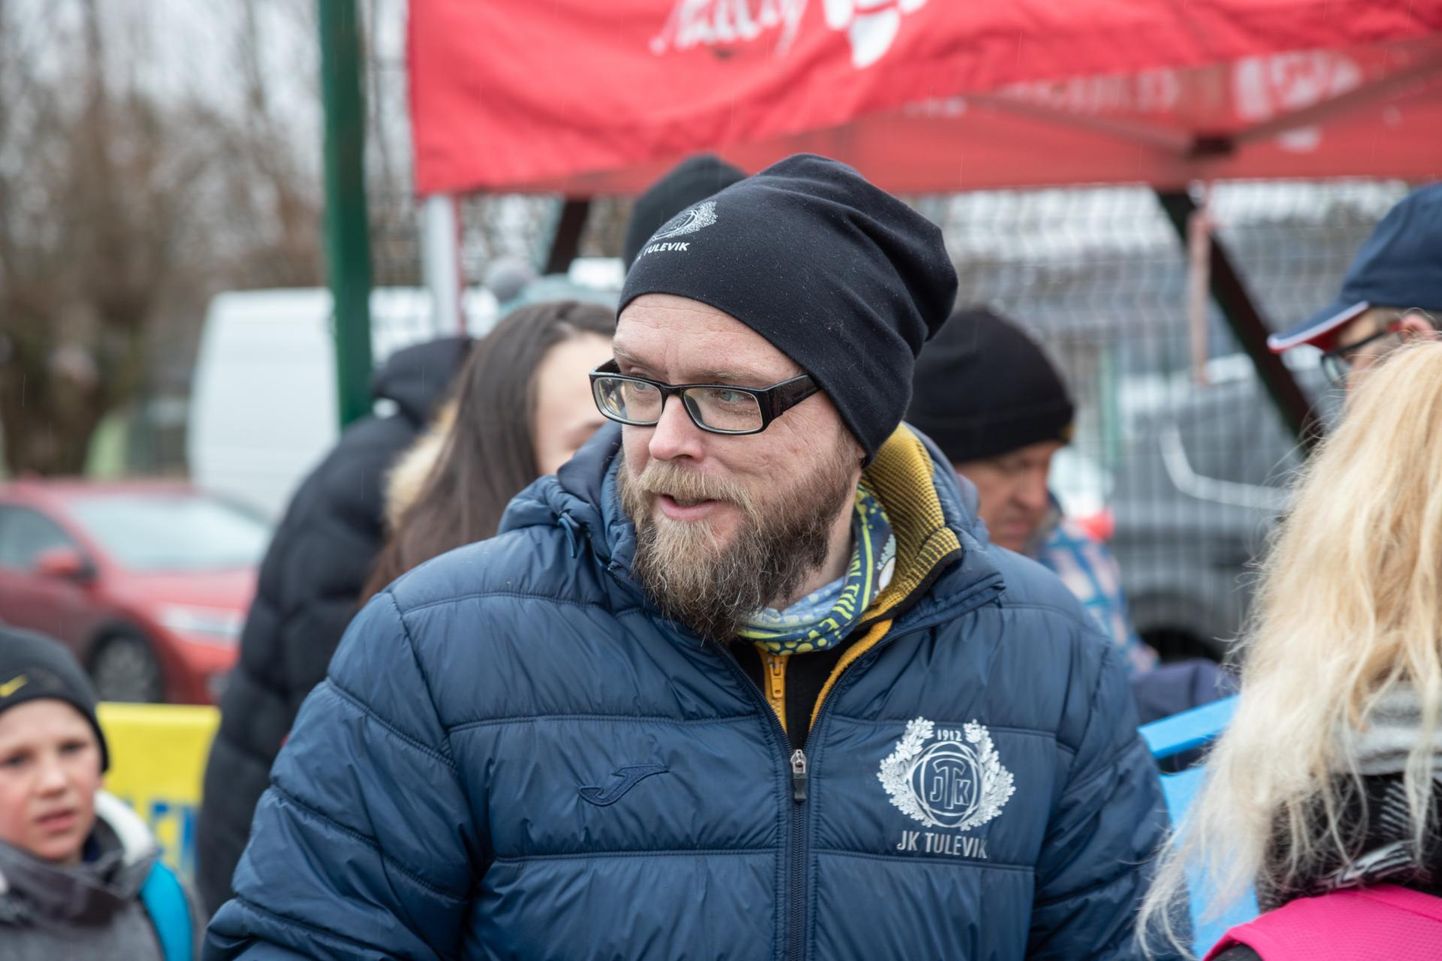 Tuleviku jalgpalliklubi kogukonnajuht Marek Tiits kutsub inimesi üles praegusel raskel ajal toetama spordiklubisid ja treenereid.